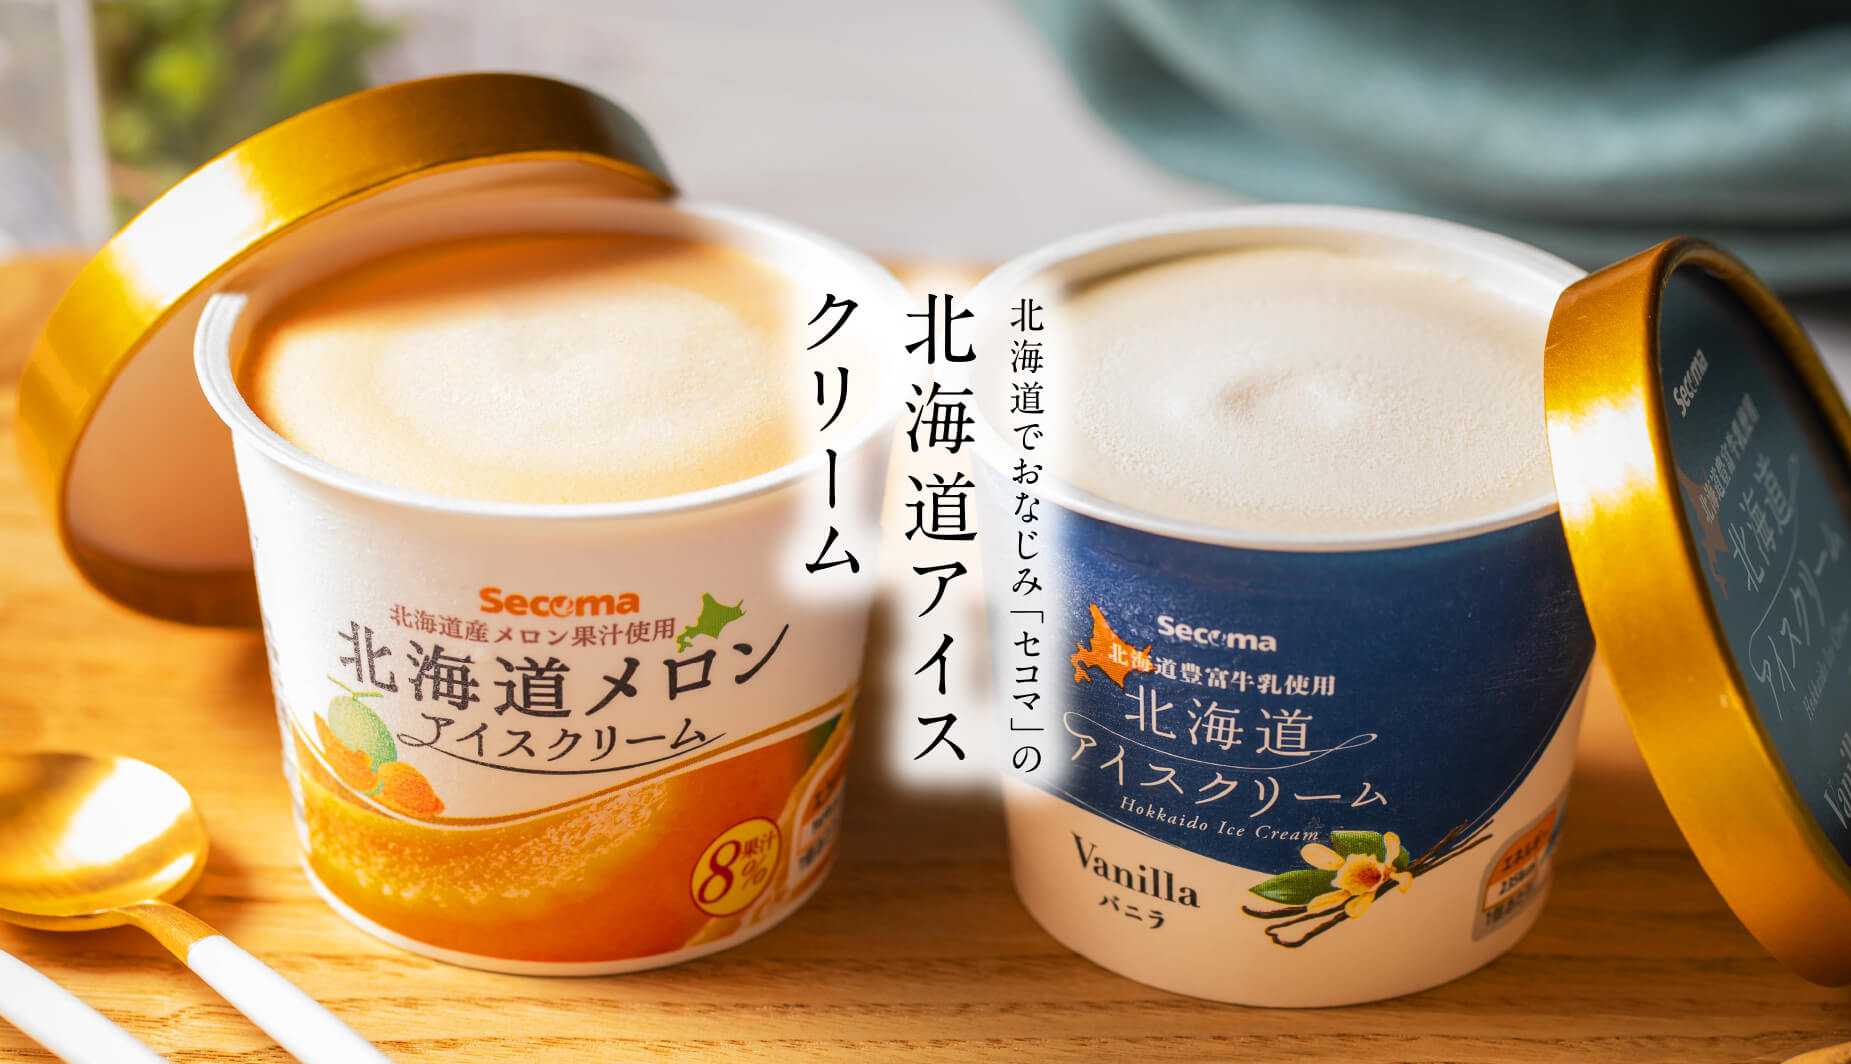 北海道でおなじみ「セコマ」の北海道アイスクリーム